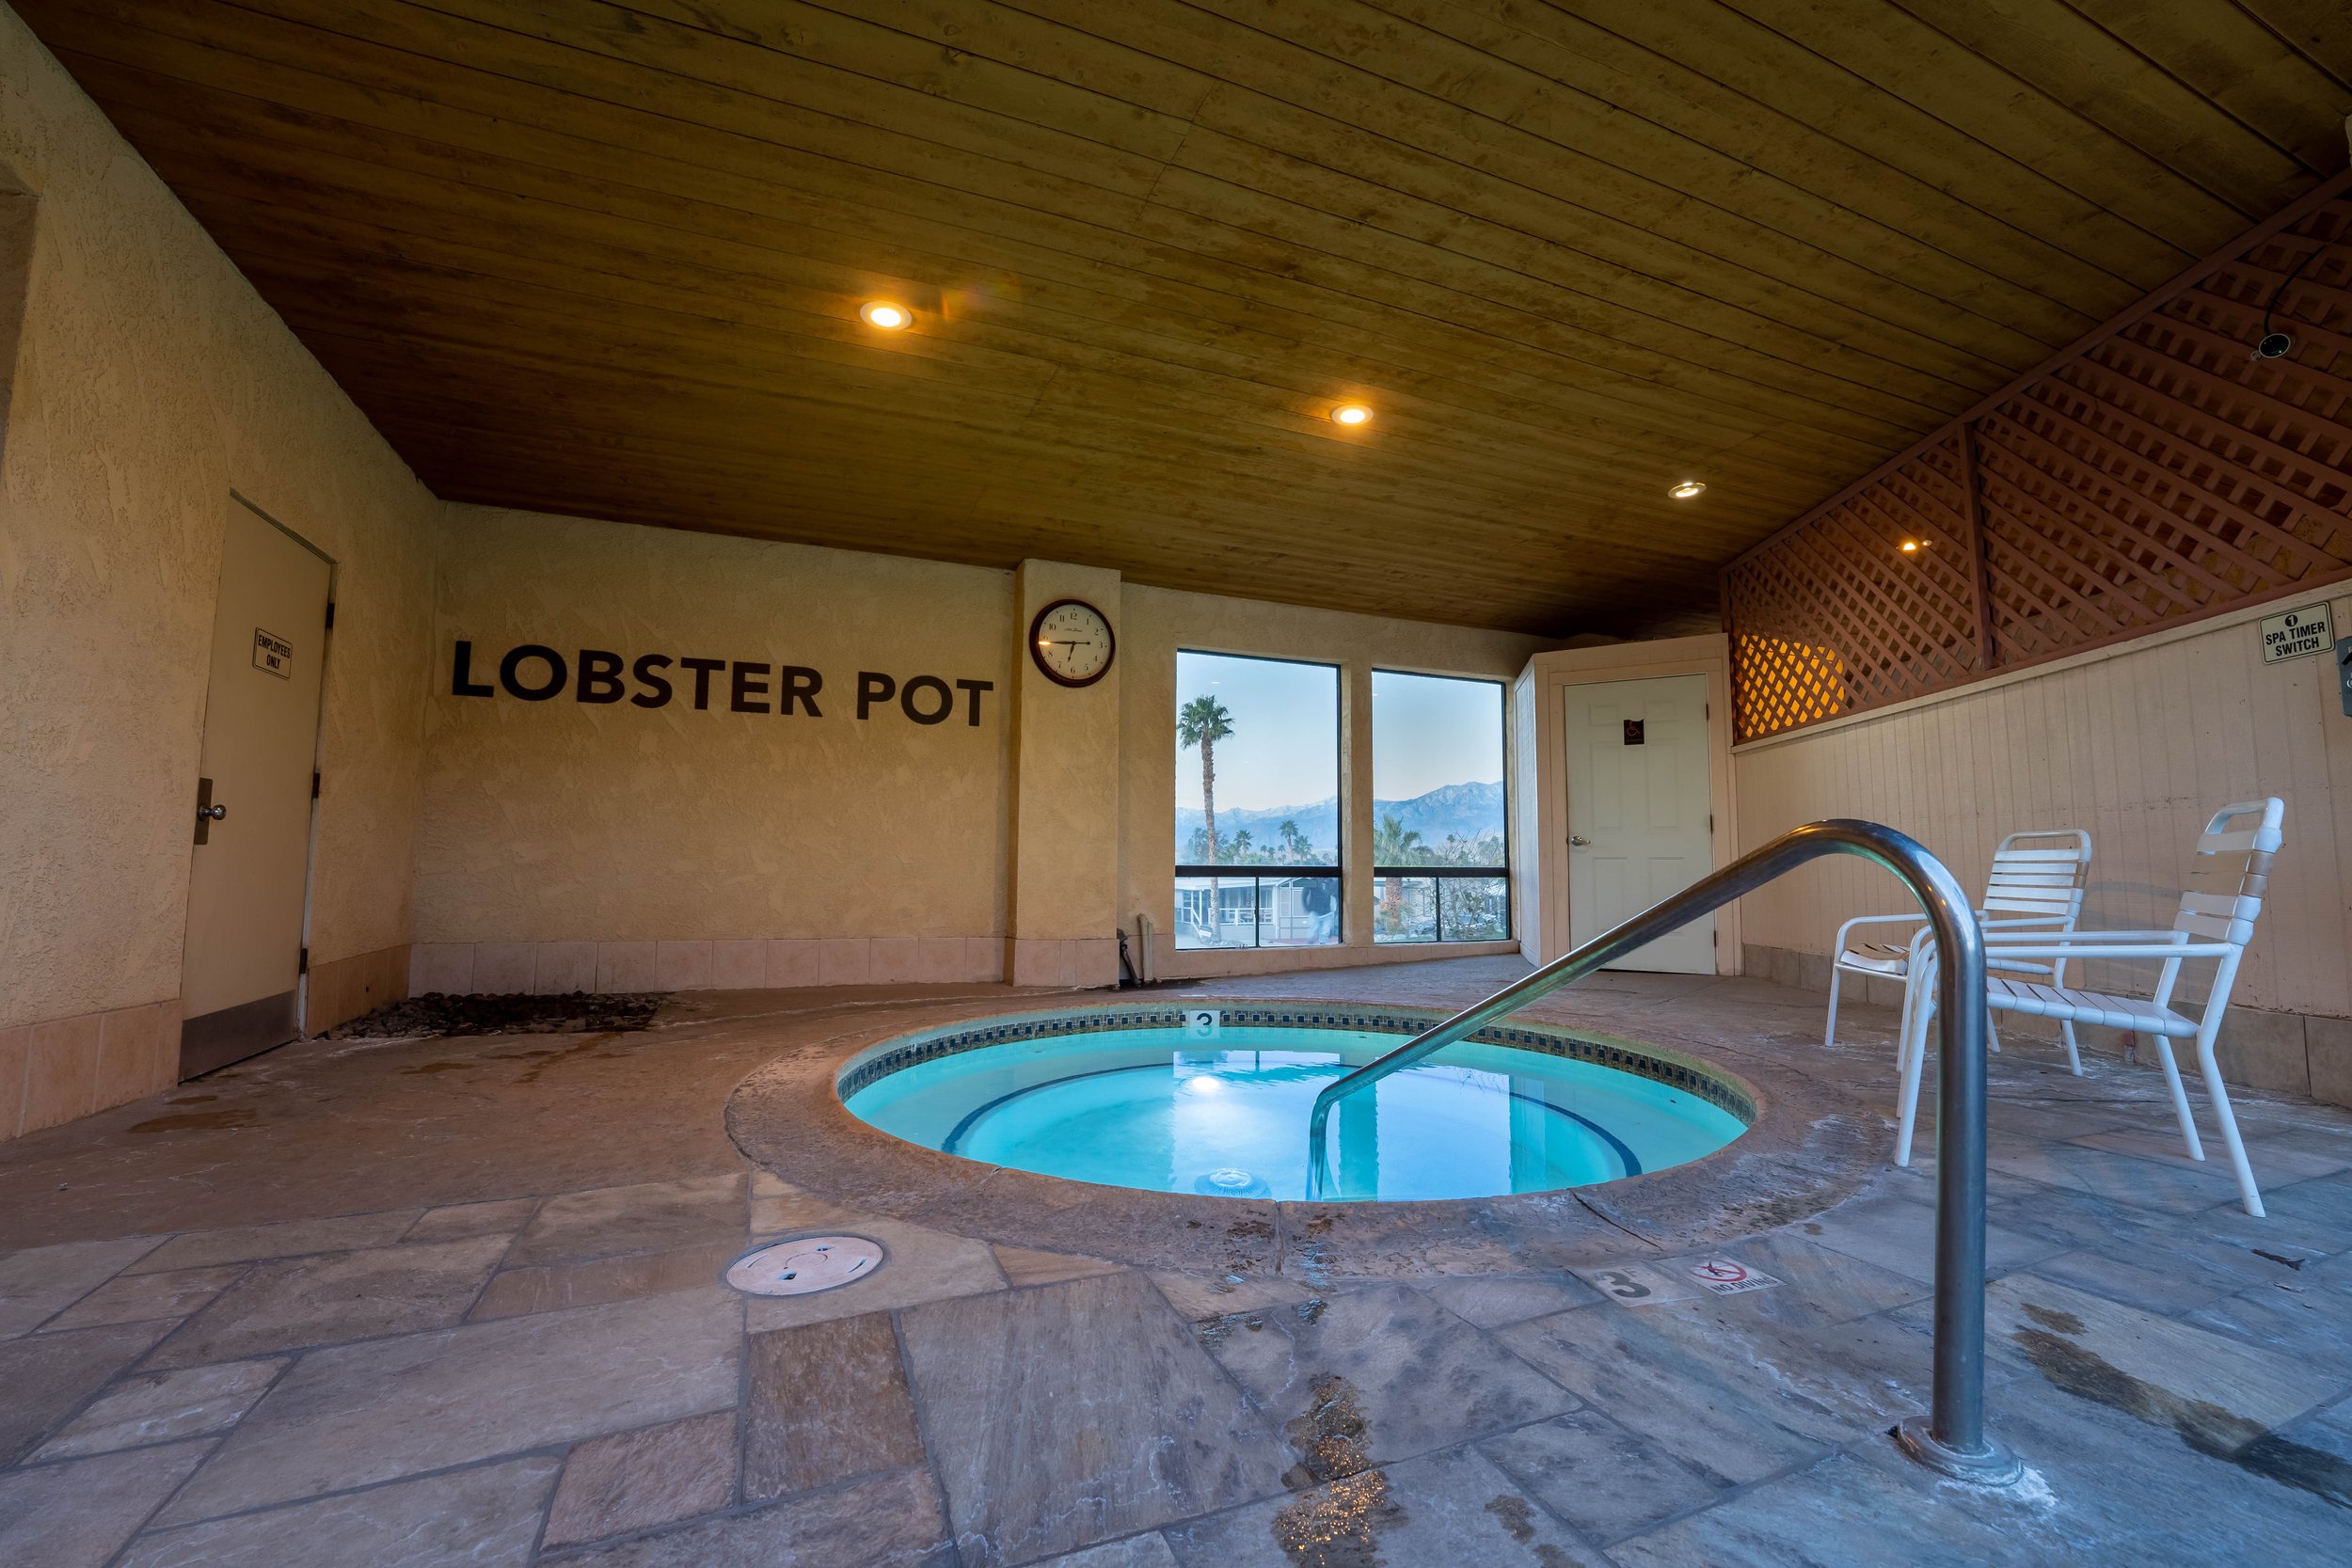 Sky Valley Resort Mineral Pool- Lobster Pot.jpg